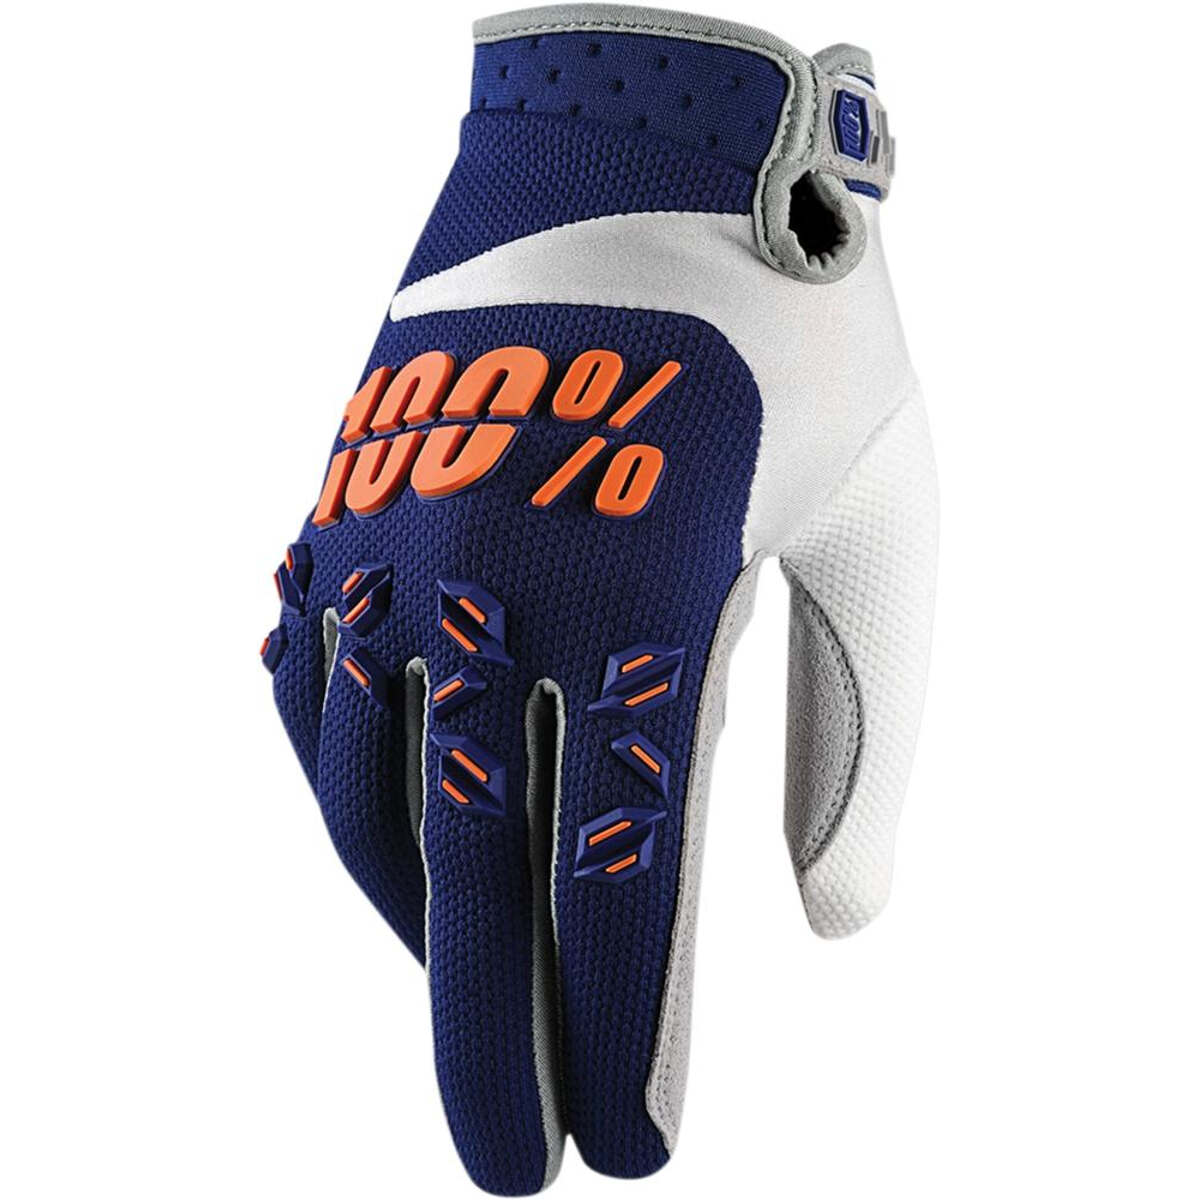 100% Kids Handschuhe Airmatic Blau/Orange